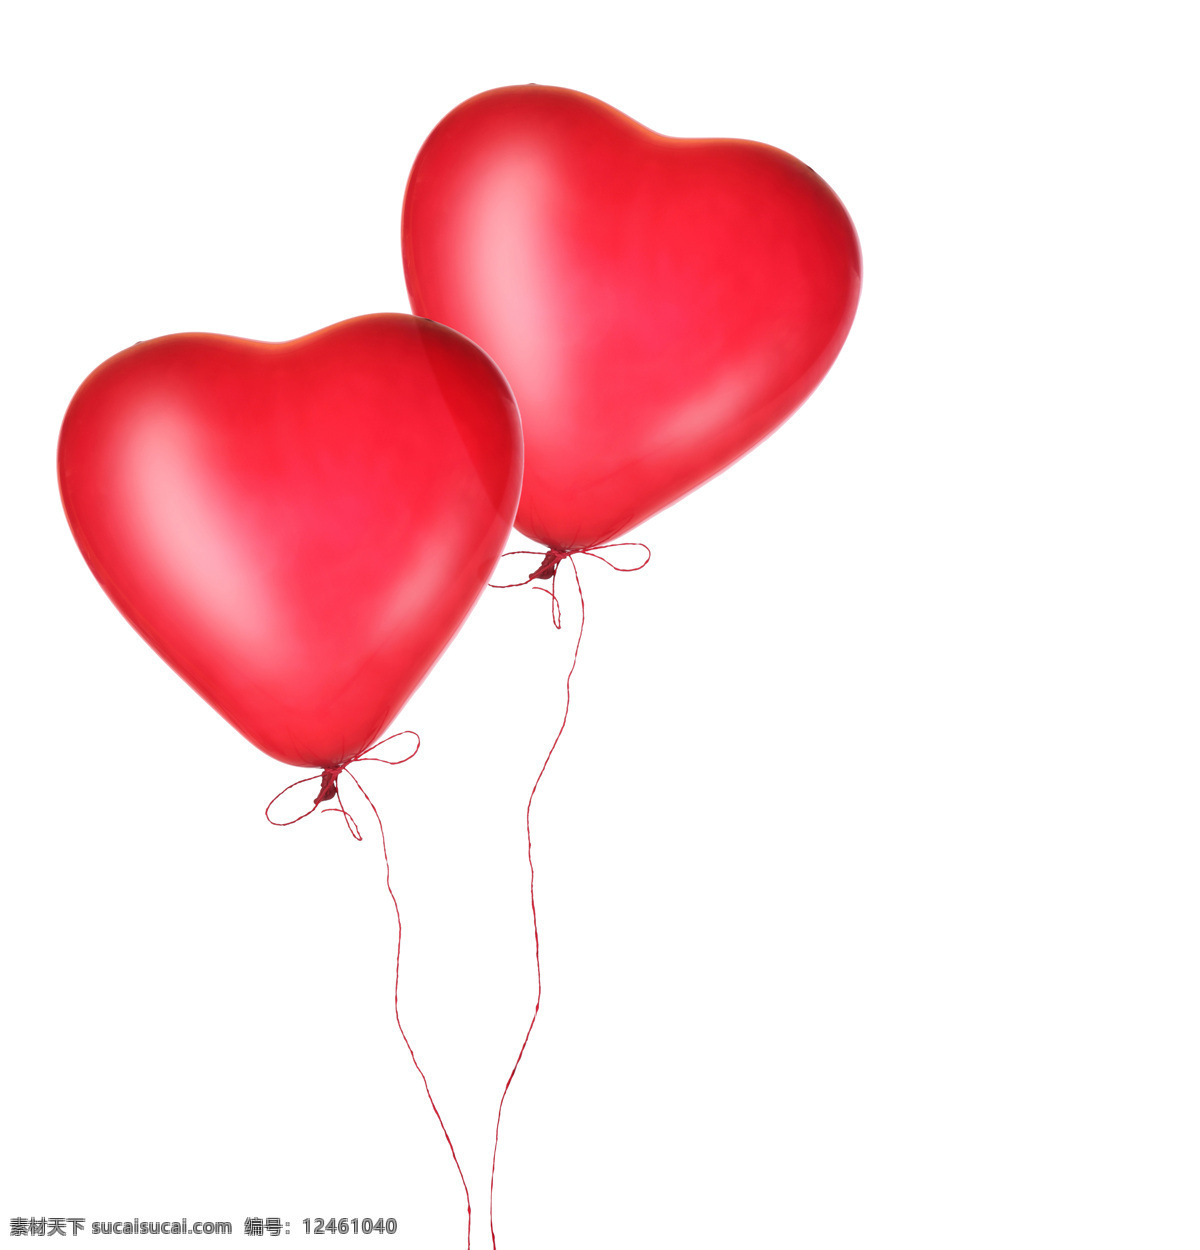 爱心 气球 玩具 情人节 飘起 浪漫 一对 两个 红色爱心气球 爱心图片 生活百科